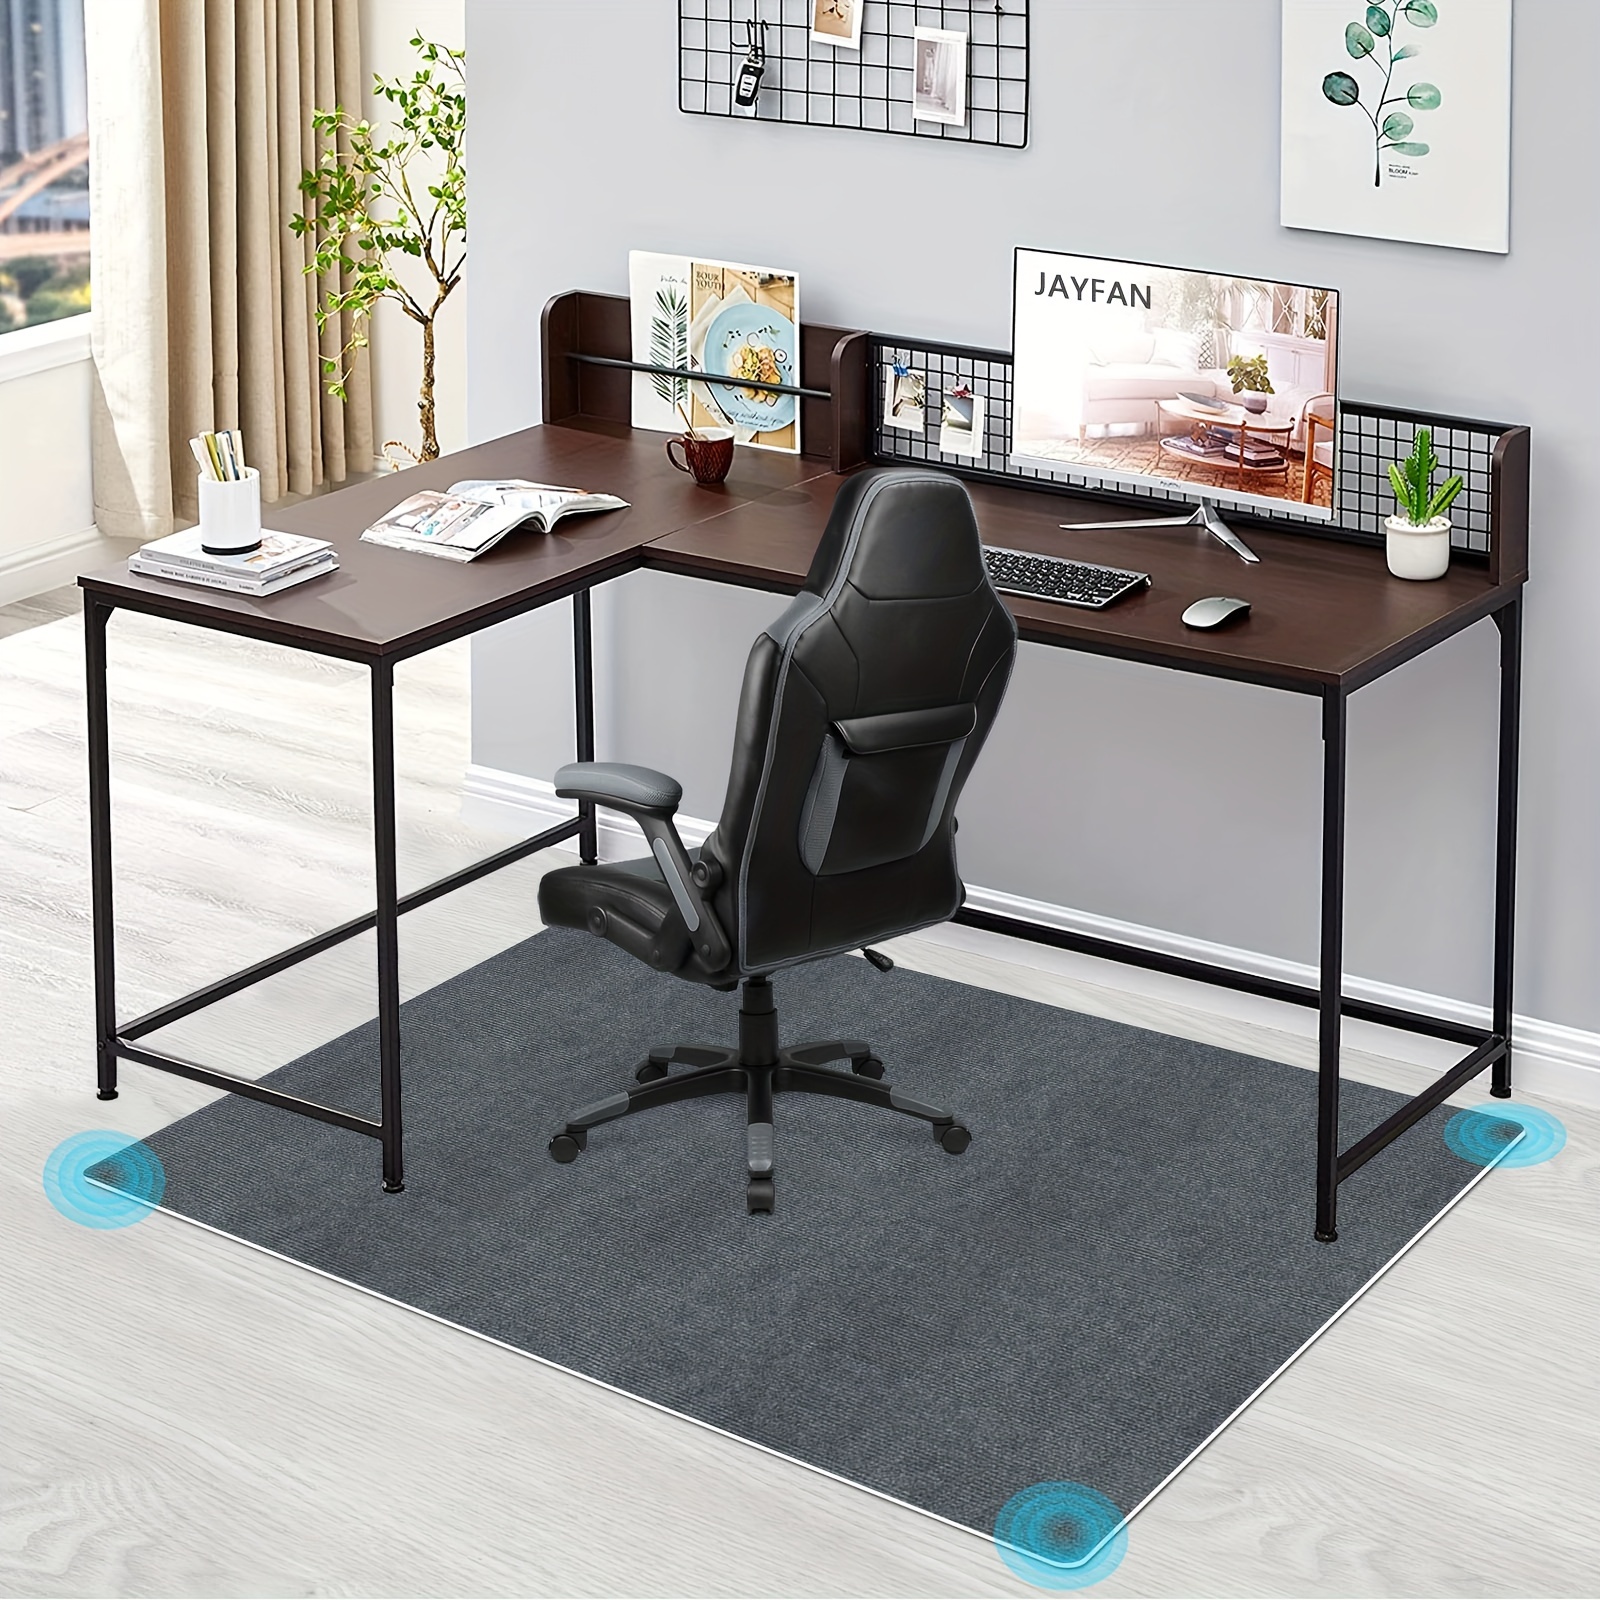 Tapis de chaise de bureau pour protecteur de plancher en bois tapis de  chaise roulante tapis de sol rond tapis antidérapant tapis de sol protéger